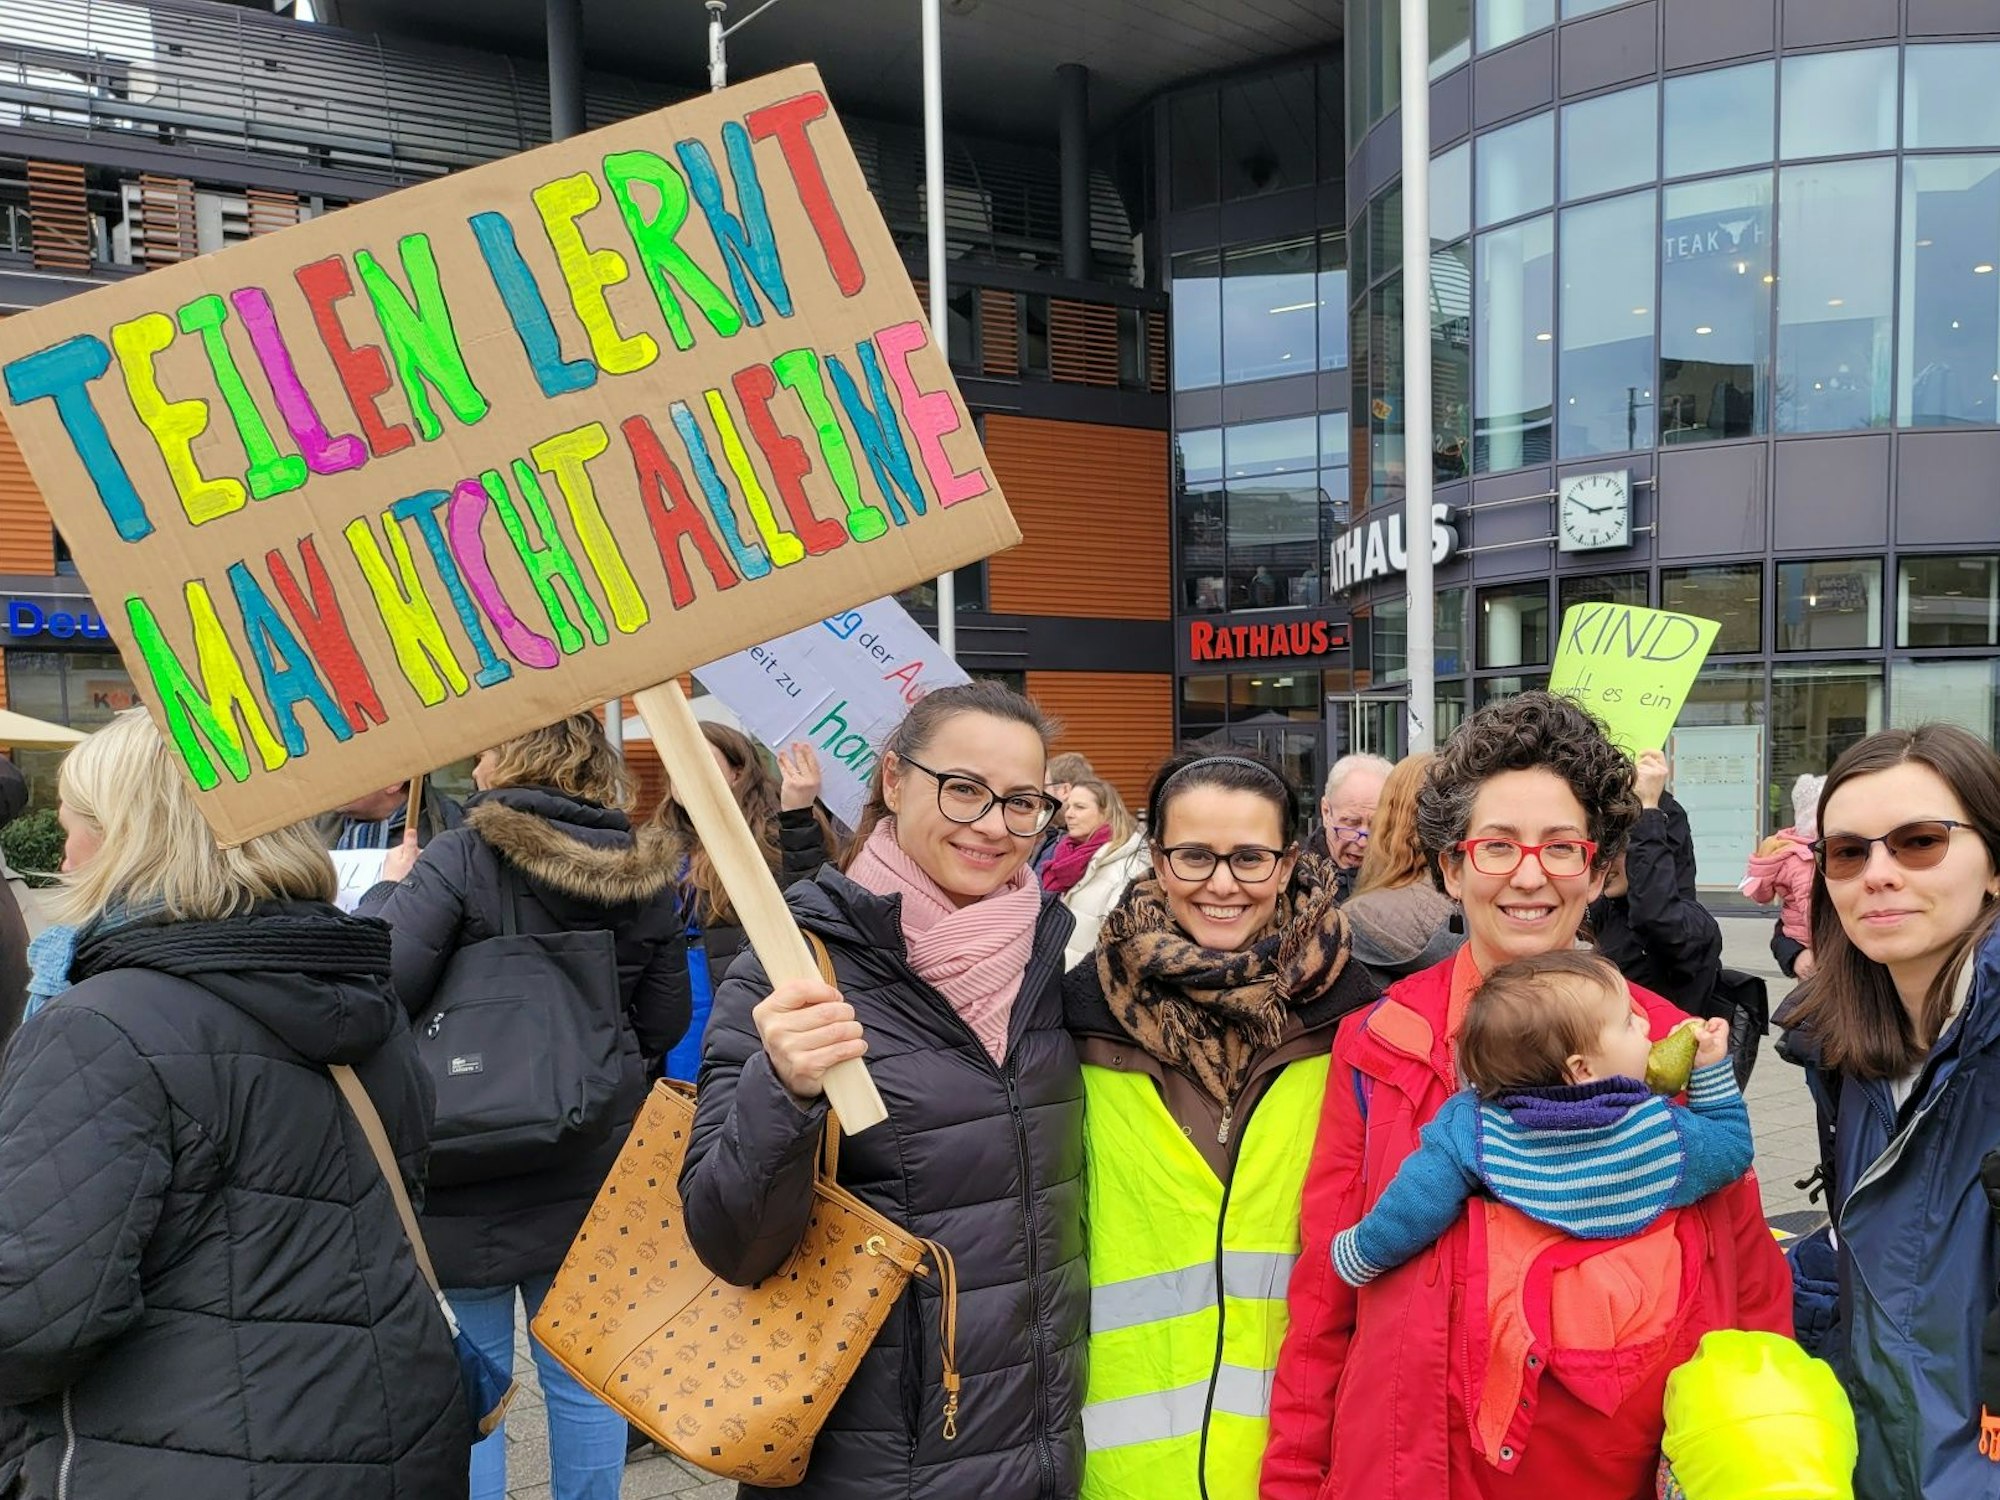 Violetta Berkelmeier (39), Solmaz Richrath (42), Natalia Tapia (39), Mara (4) und Anastasia Kirfel (30).

Demo zum Kitanotstand in Leverkusen am 21. Februar 2024